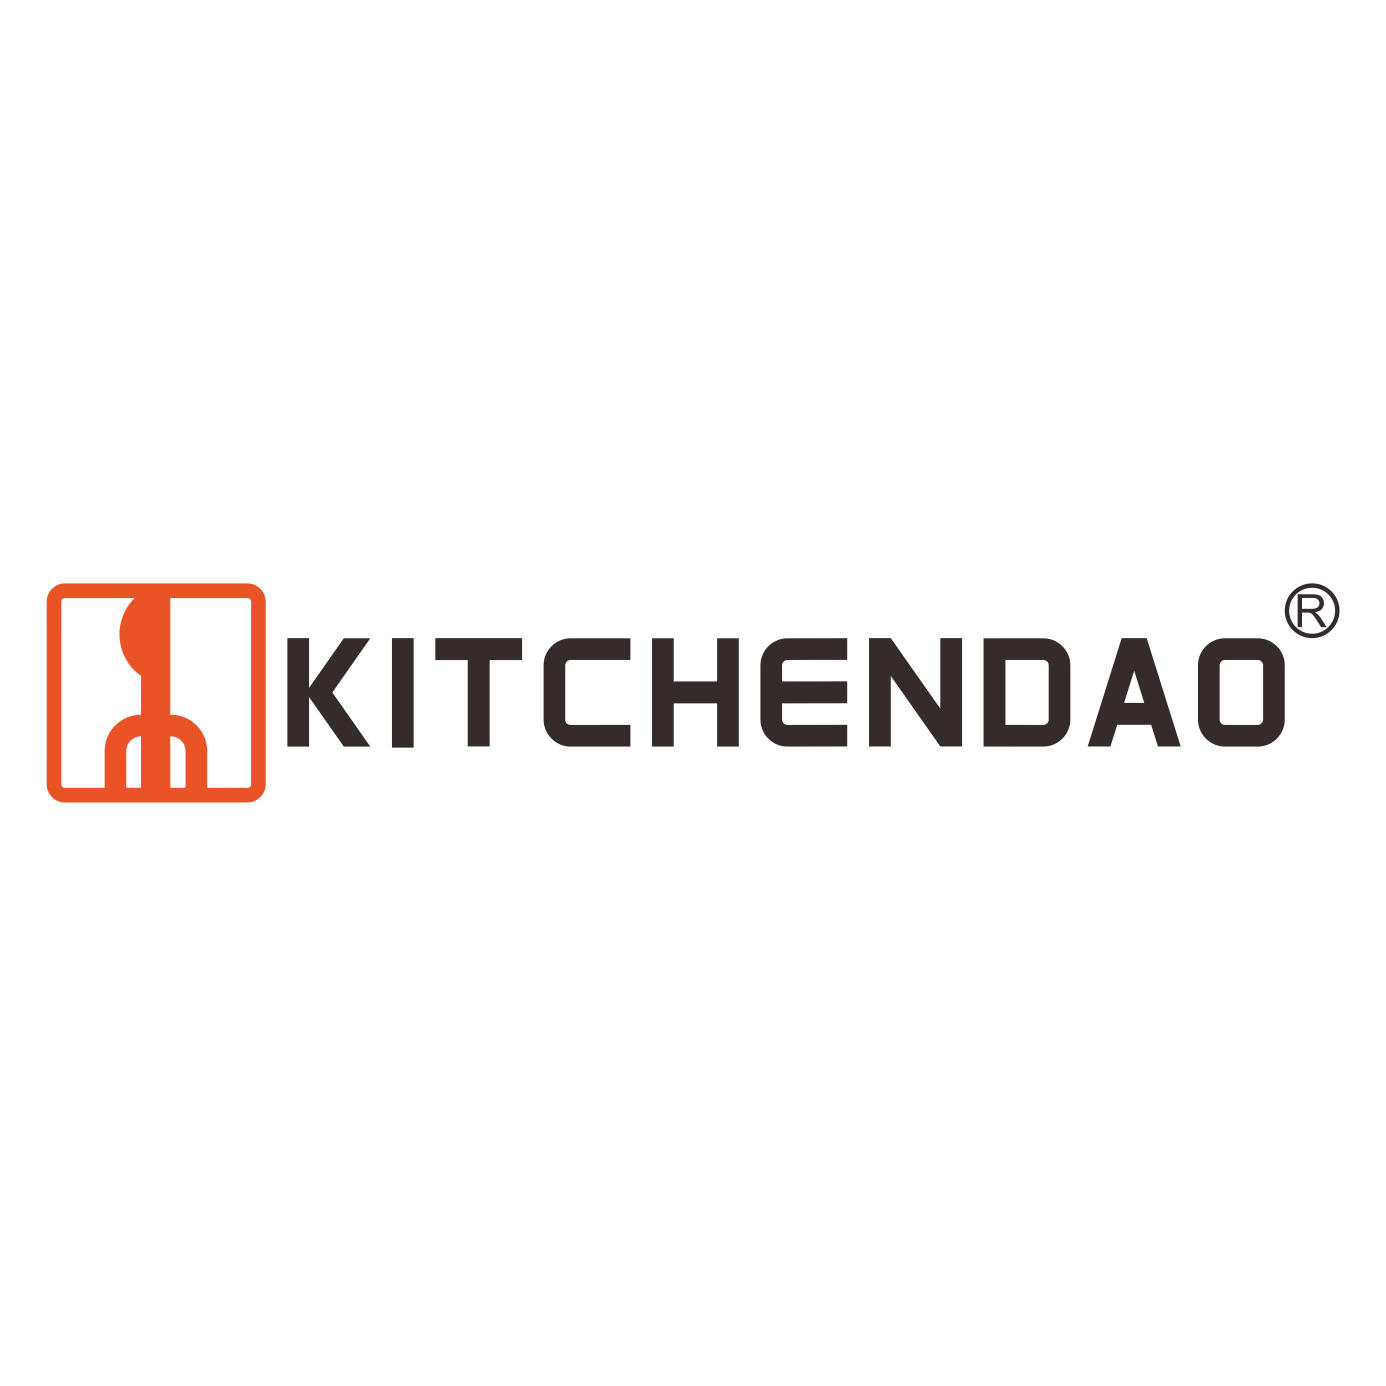 Kitchendao Kitchenware Co., LTD